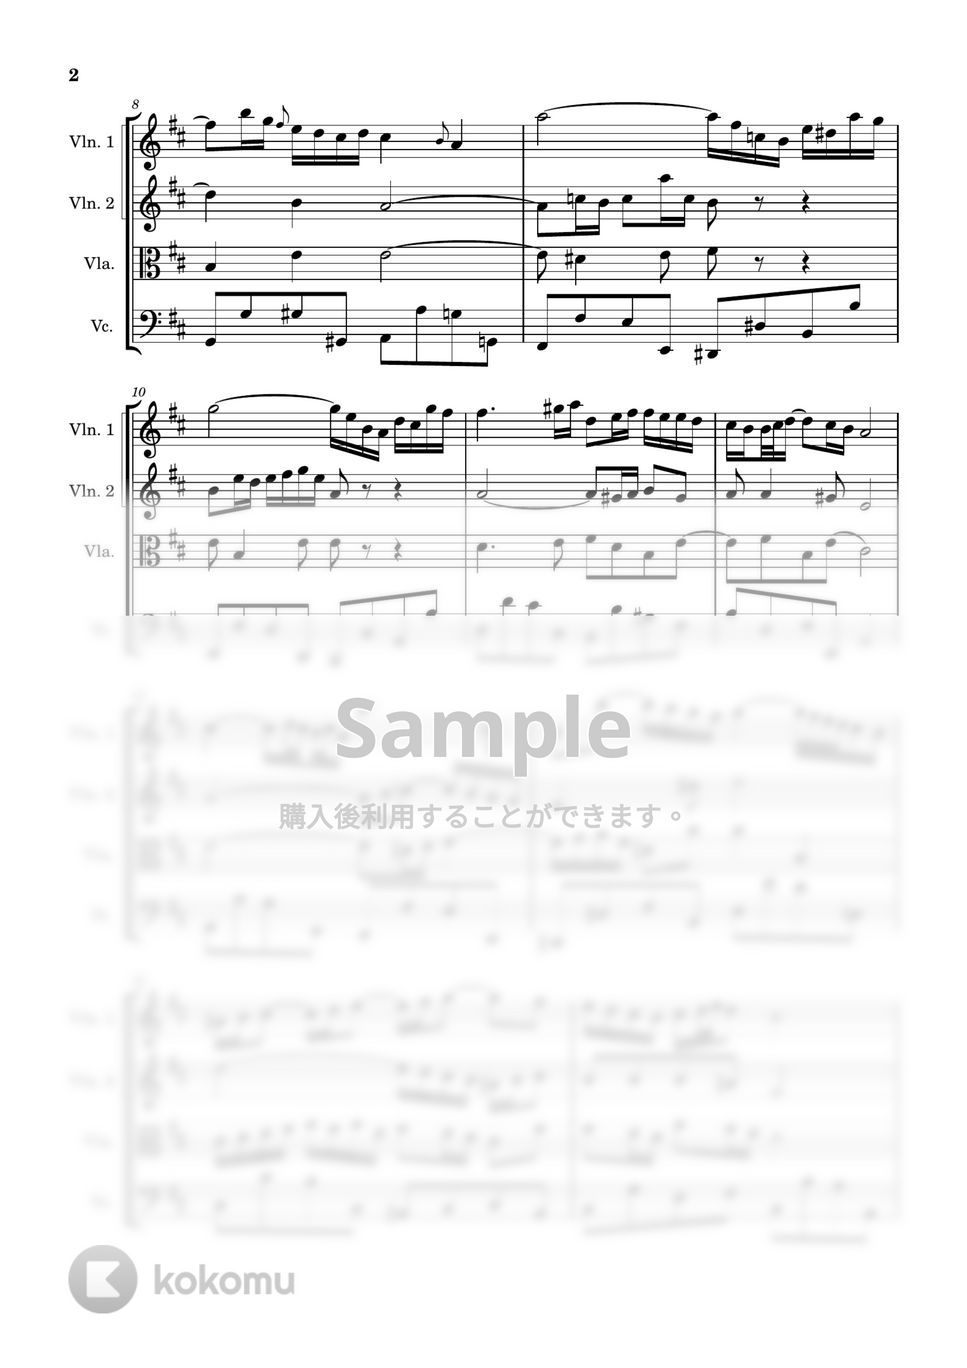 バッハ - G線上のアリア (弦楽四重奏) by Cellotto